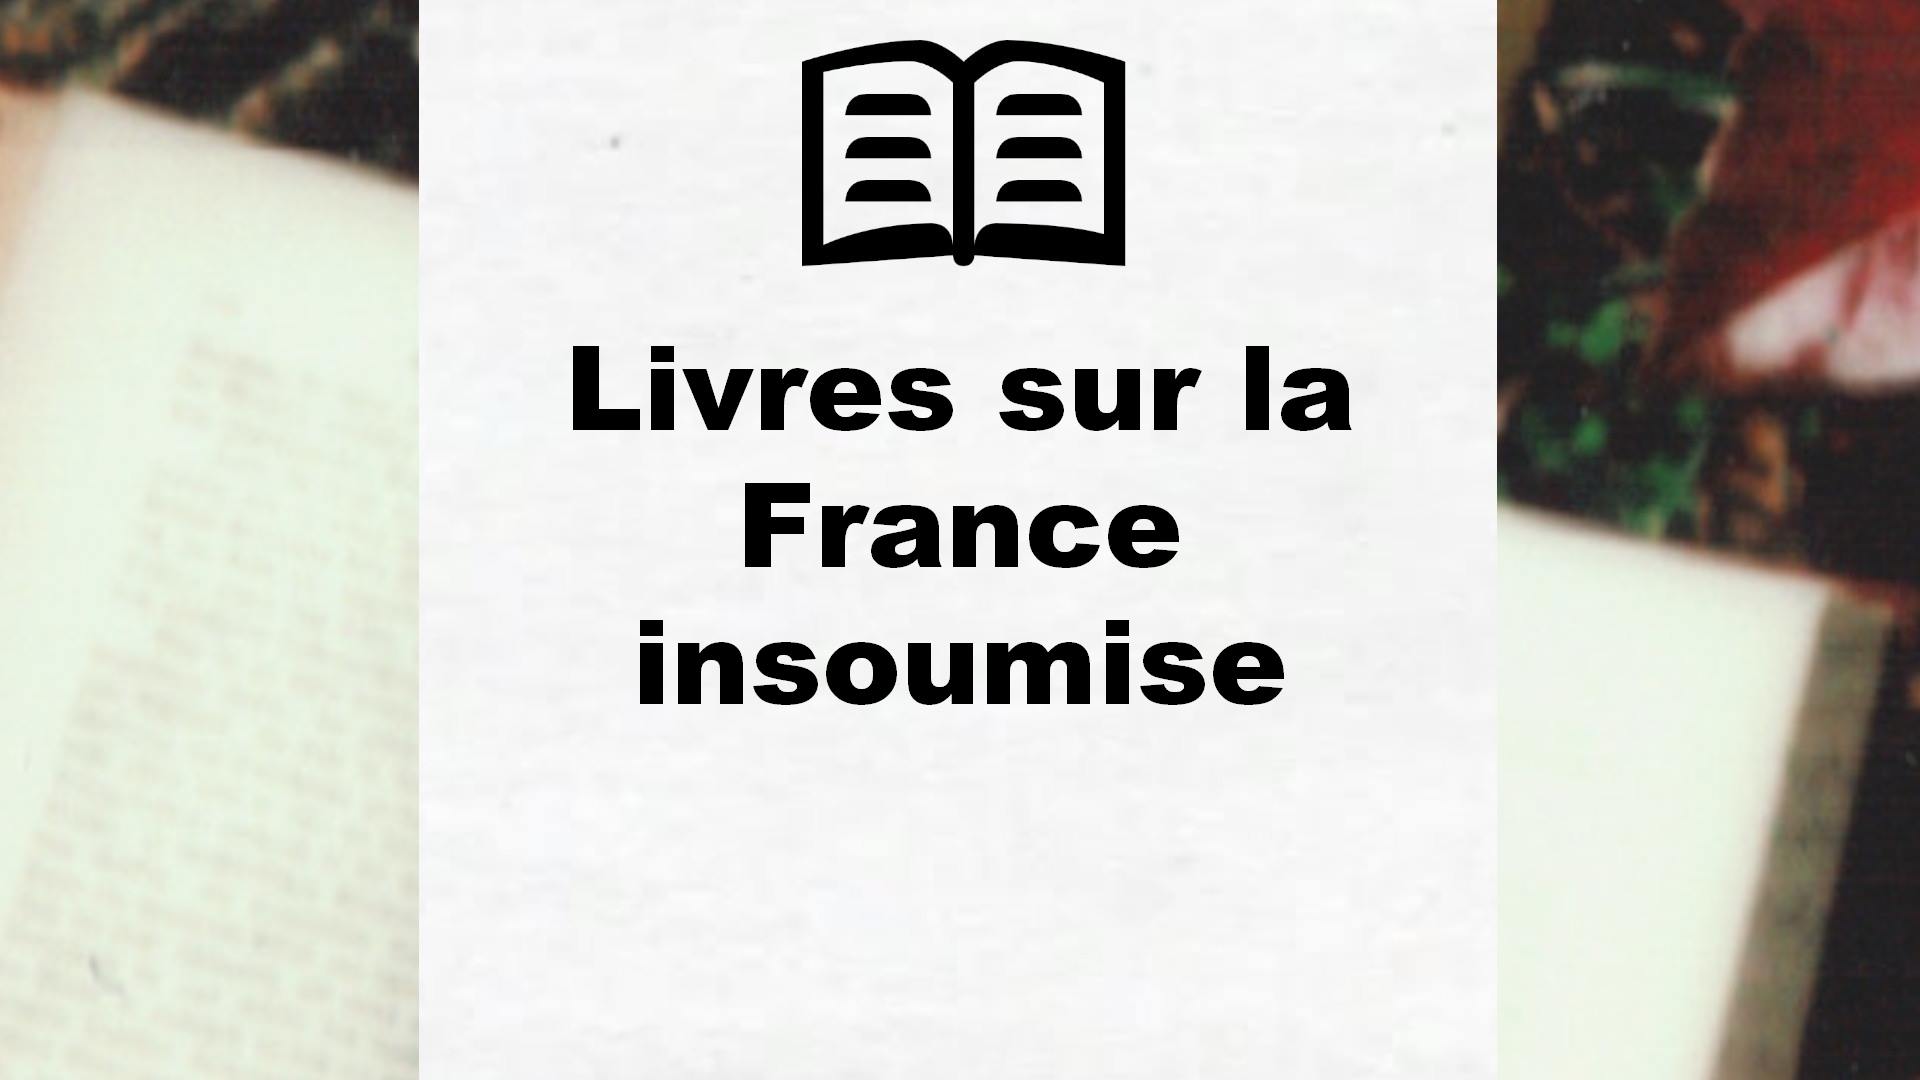 Livres sur la France insoumise